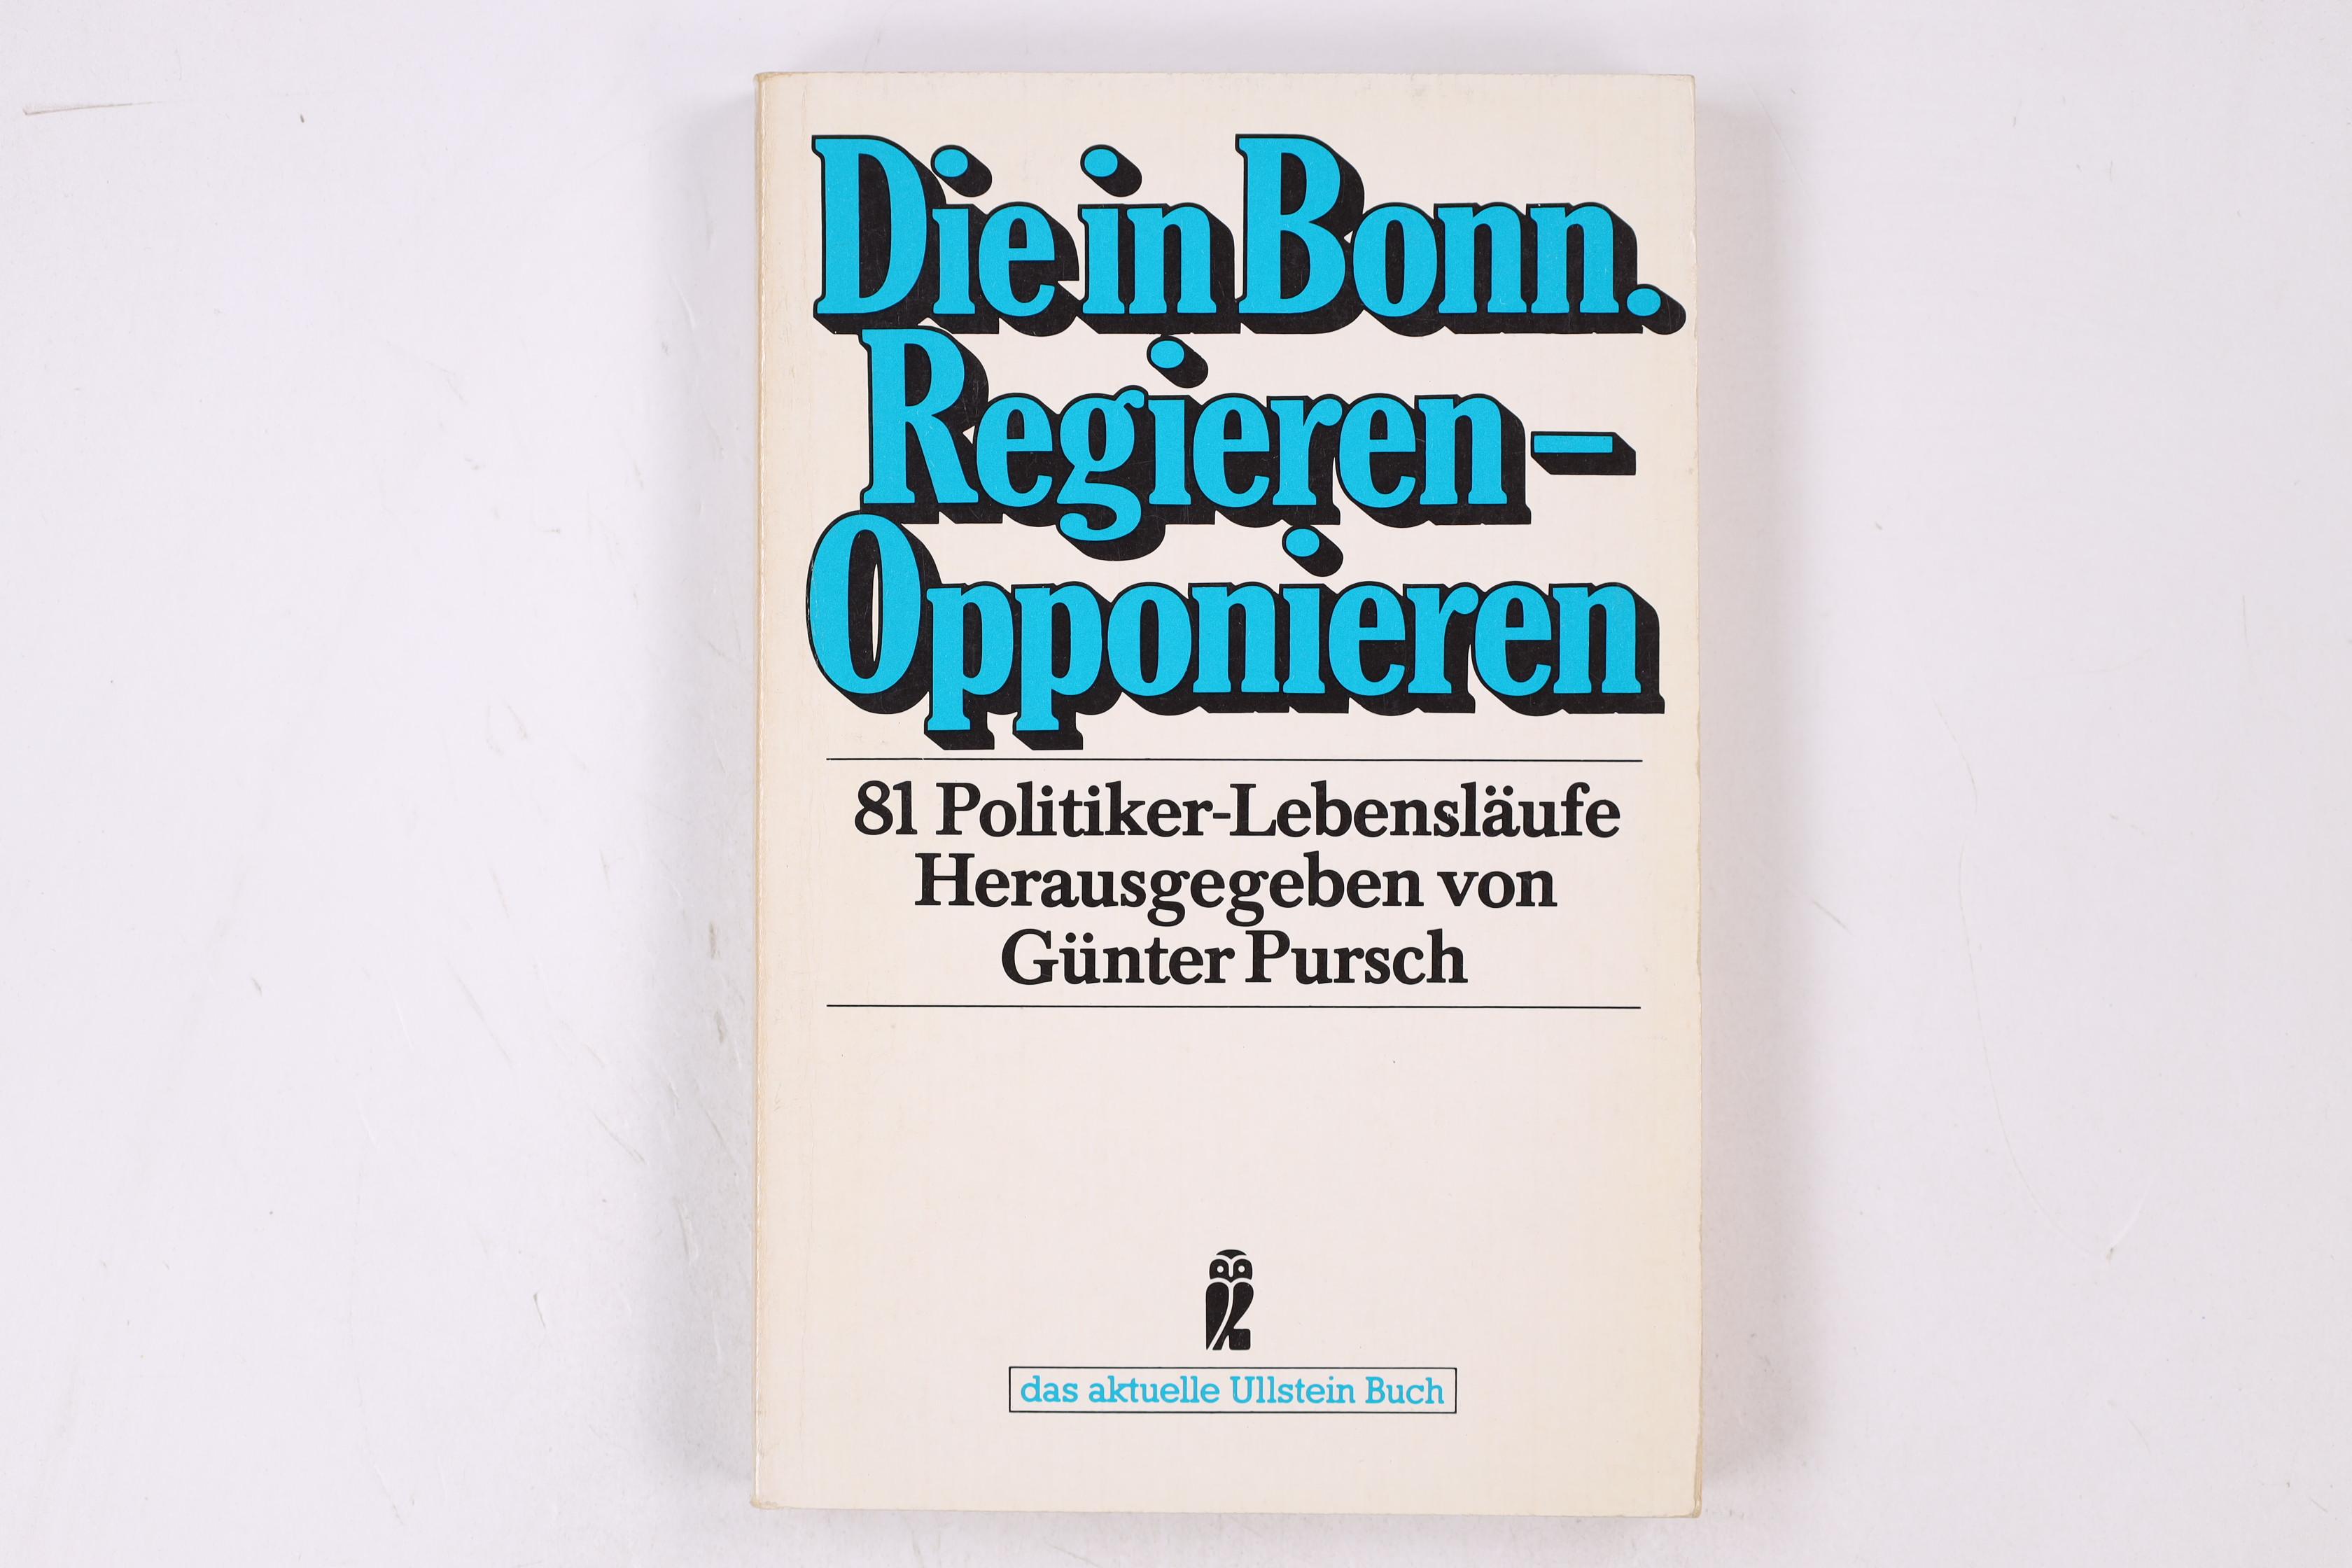 DIE IN BONN: REGIEREN - OPPONIEREN. 81 Politiker-Lebensläufe - [Hrsg.]: Pursch, Günter